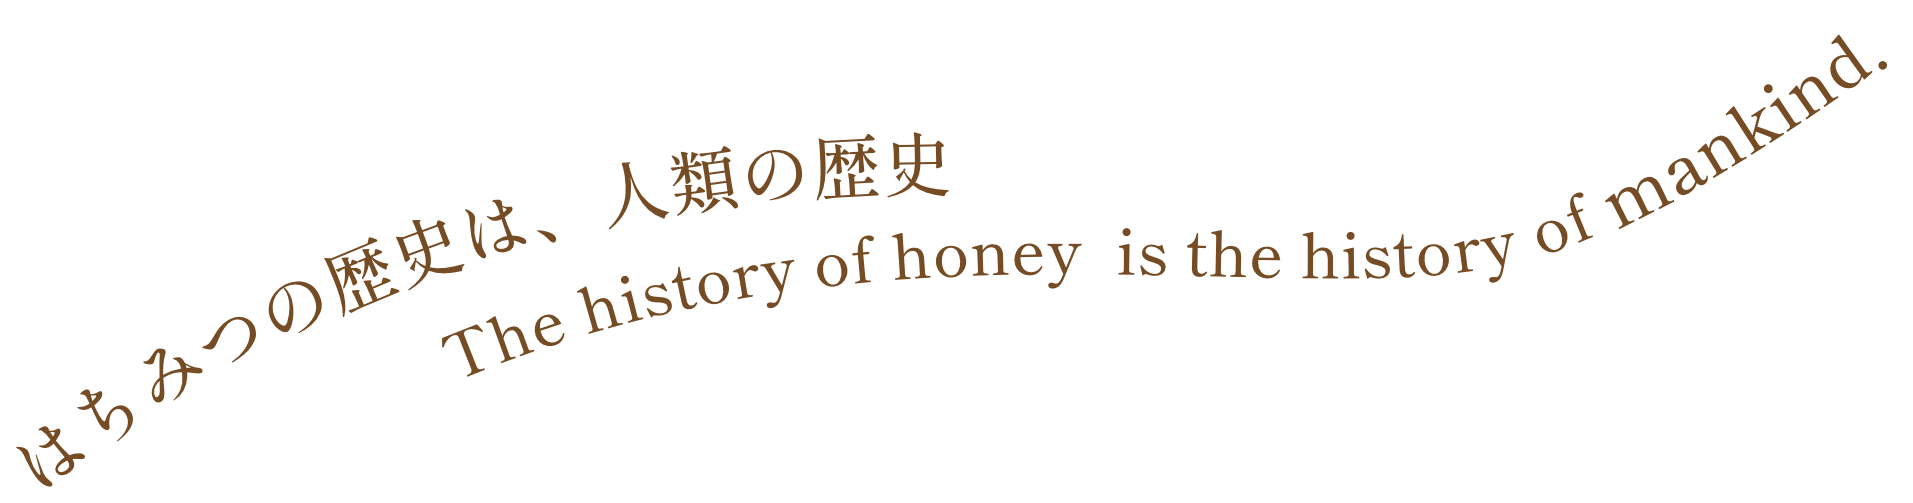  はちみつの歴史は、人類の歴史 - The history of honey  is the history of mankind.